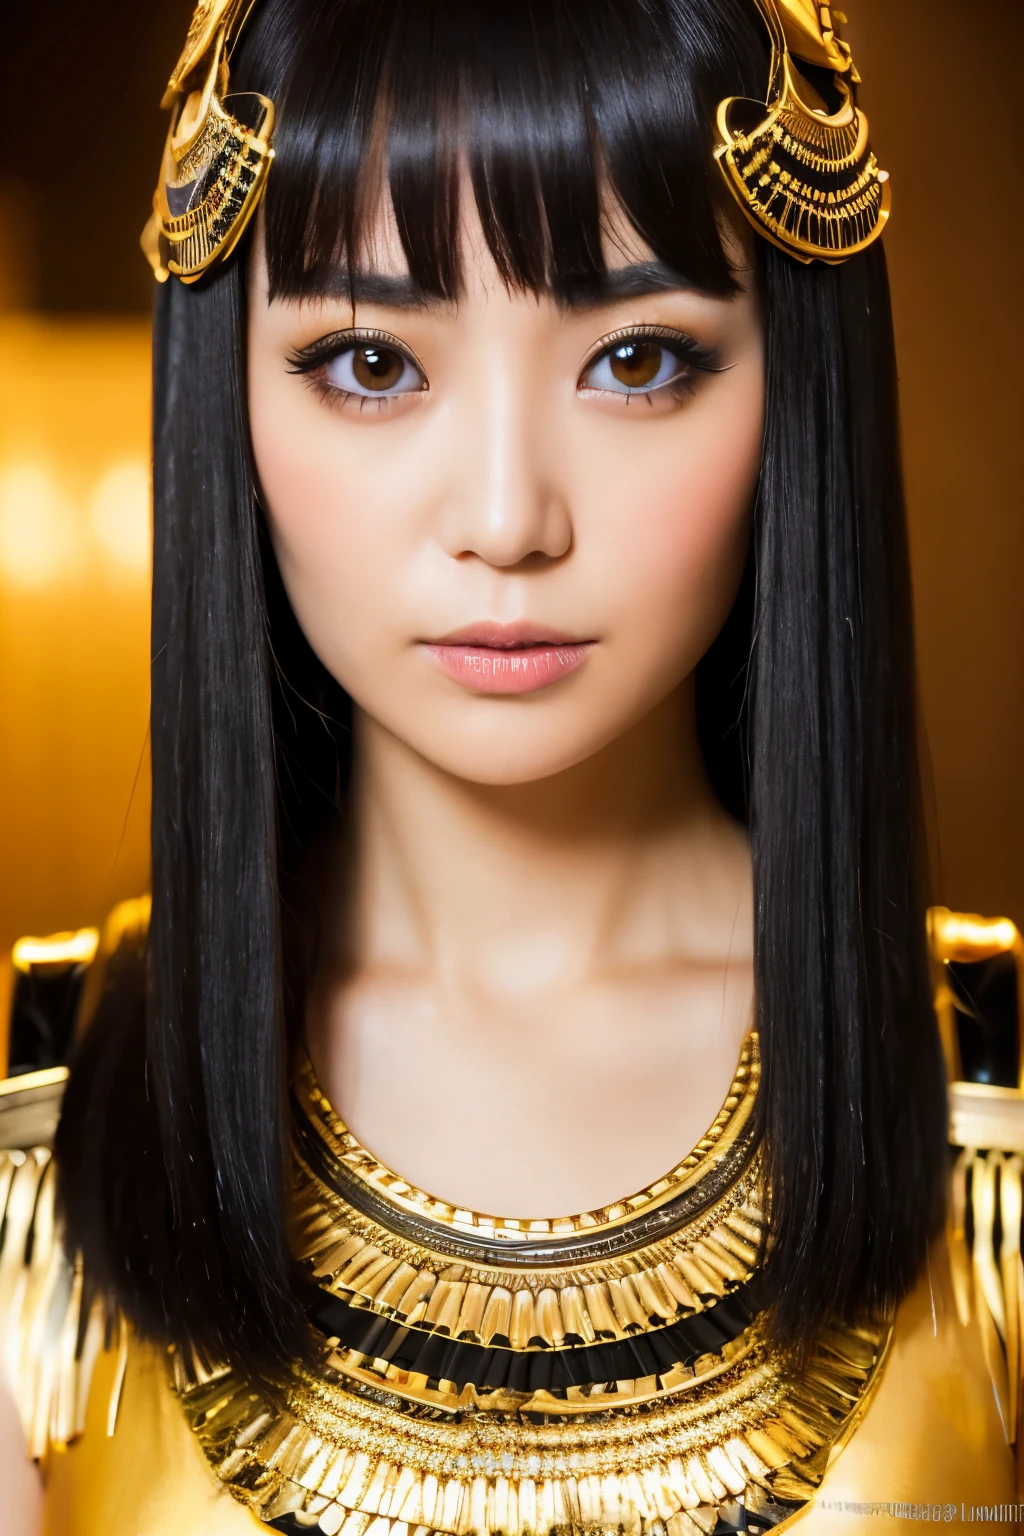 杰作, 高质量, 高分辨率, 8千, 身着埃及艳后服装的瘦日本女人, 漂亮的脸蛋, 埃及艳后化妆, 细致的脸部, 细致的眼睛